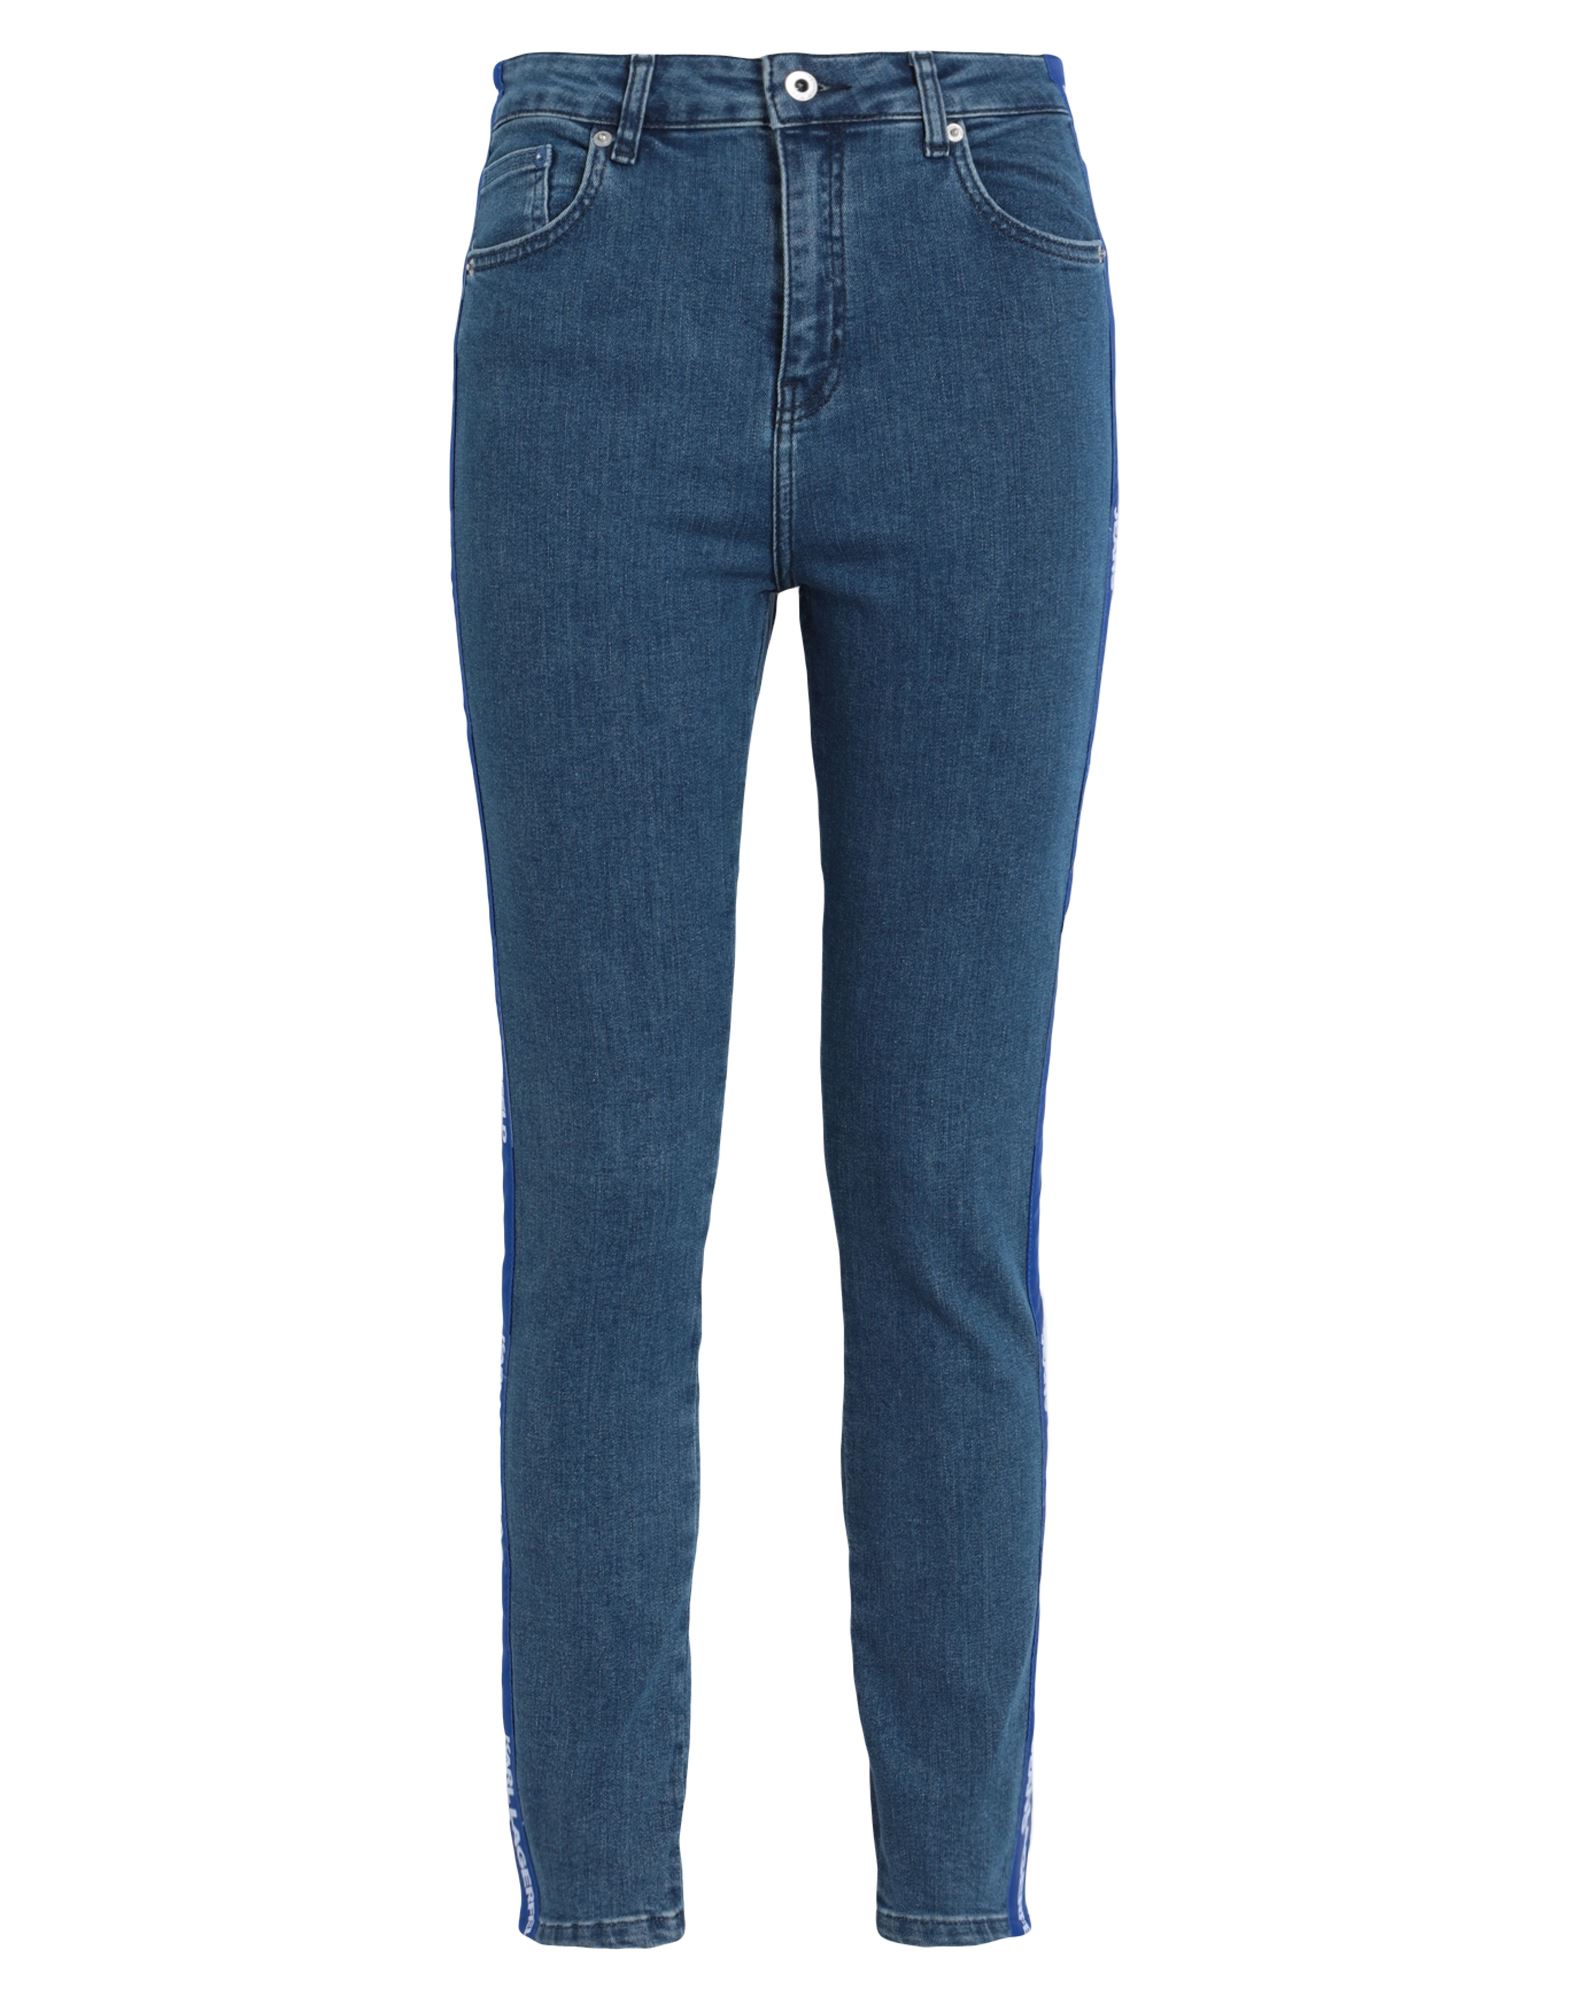 Karl Lagerfeld Jeans Klj Hr Skinny Logo Denim Woman Jeans Blue Size 30w-30l Organic Cotton, Cotton,